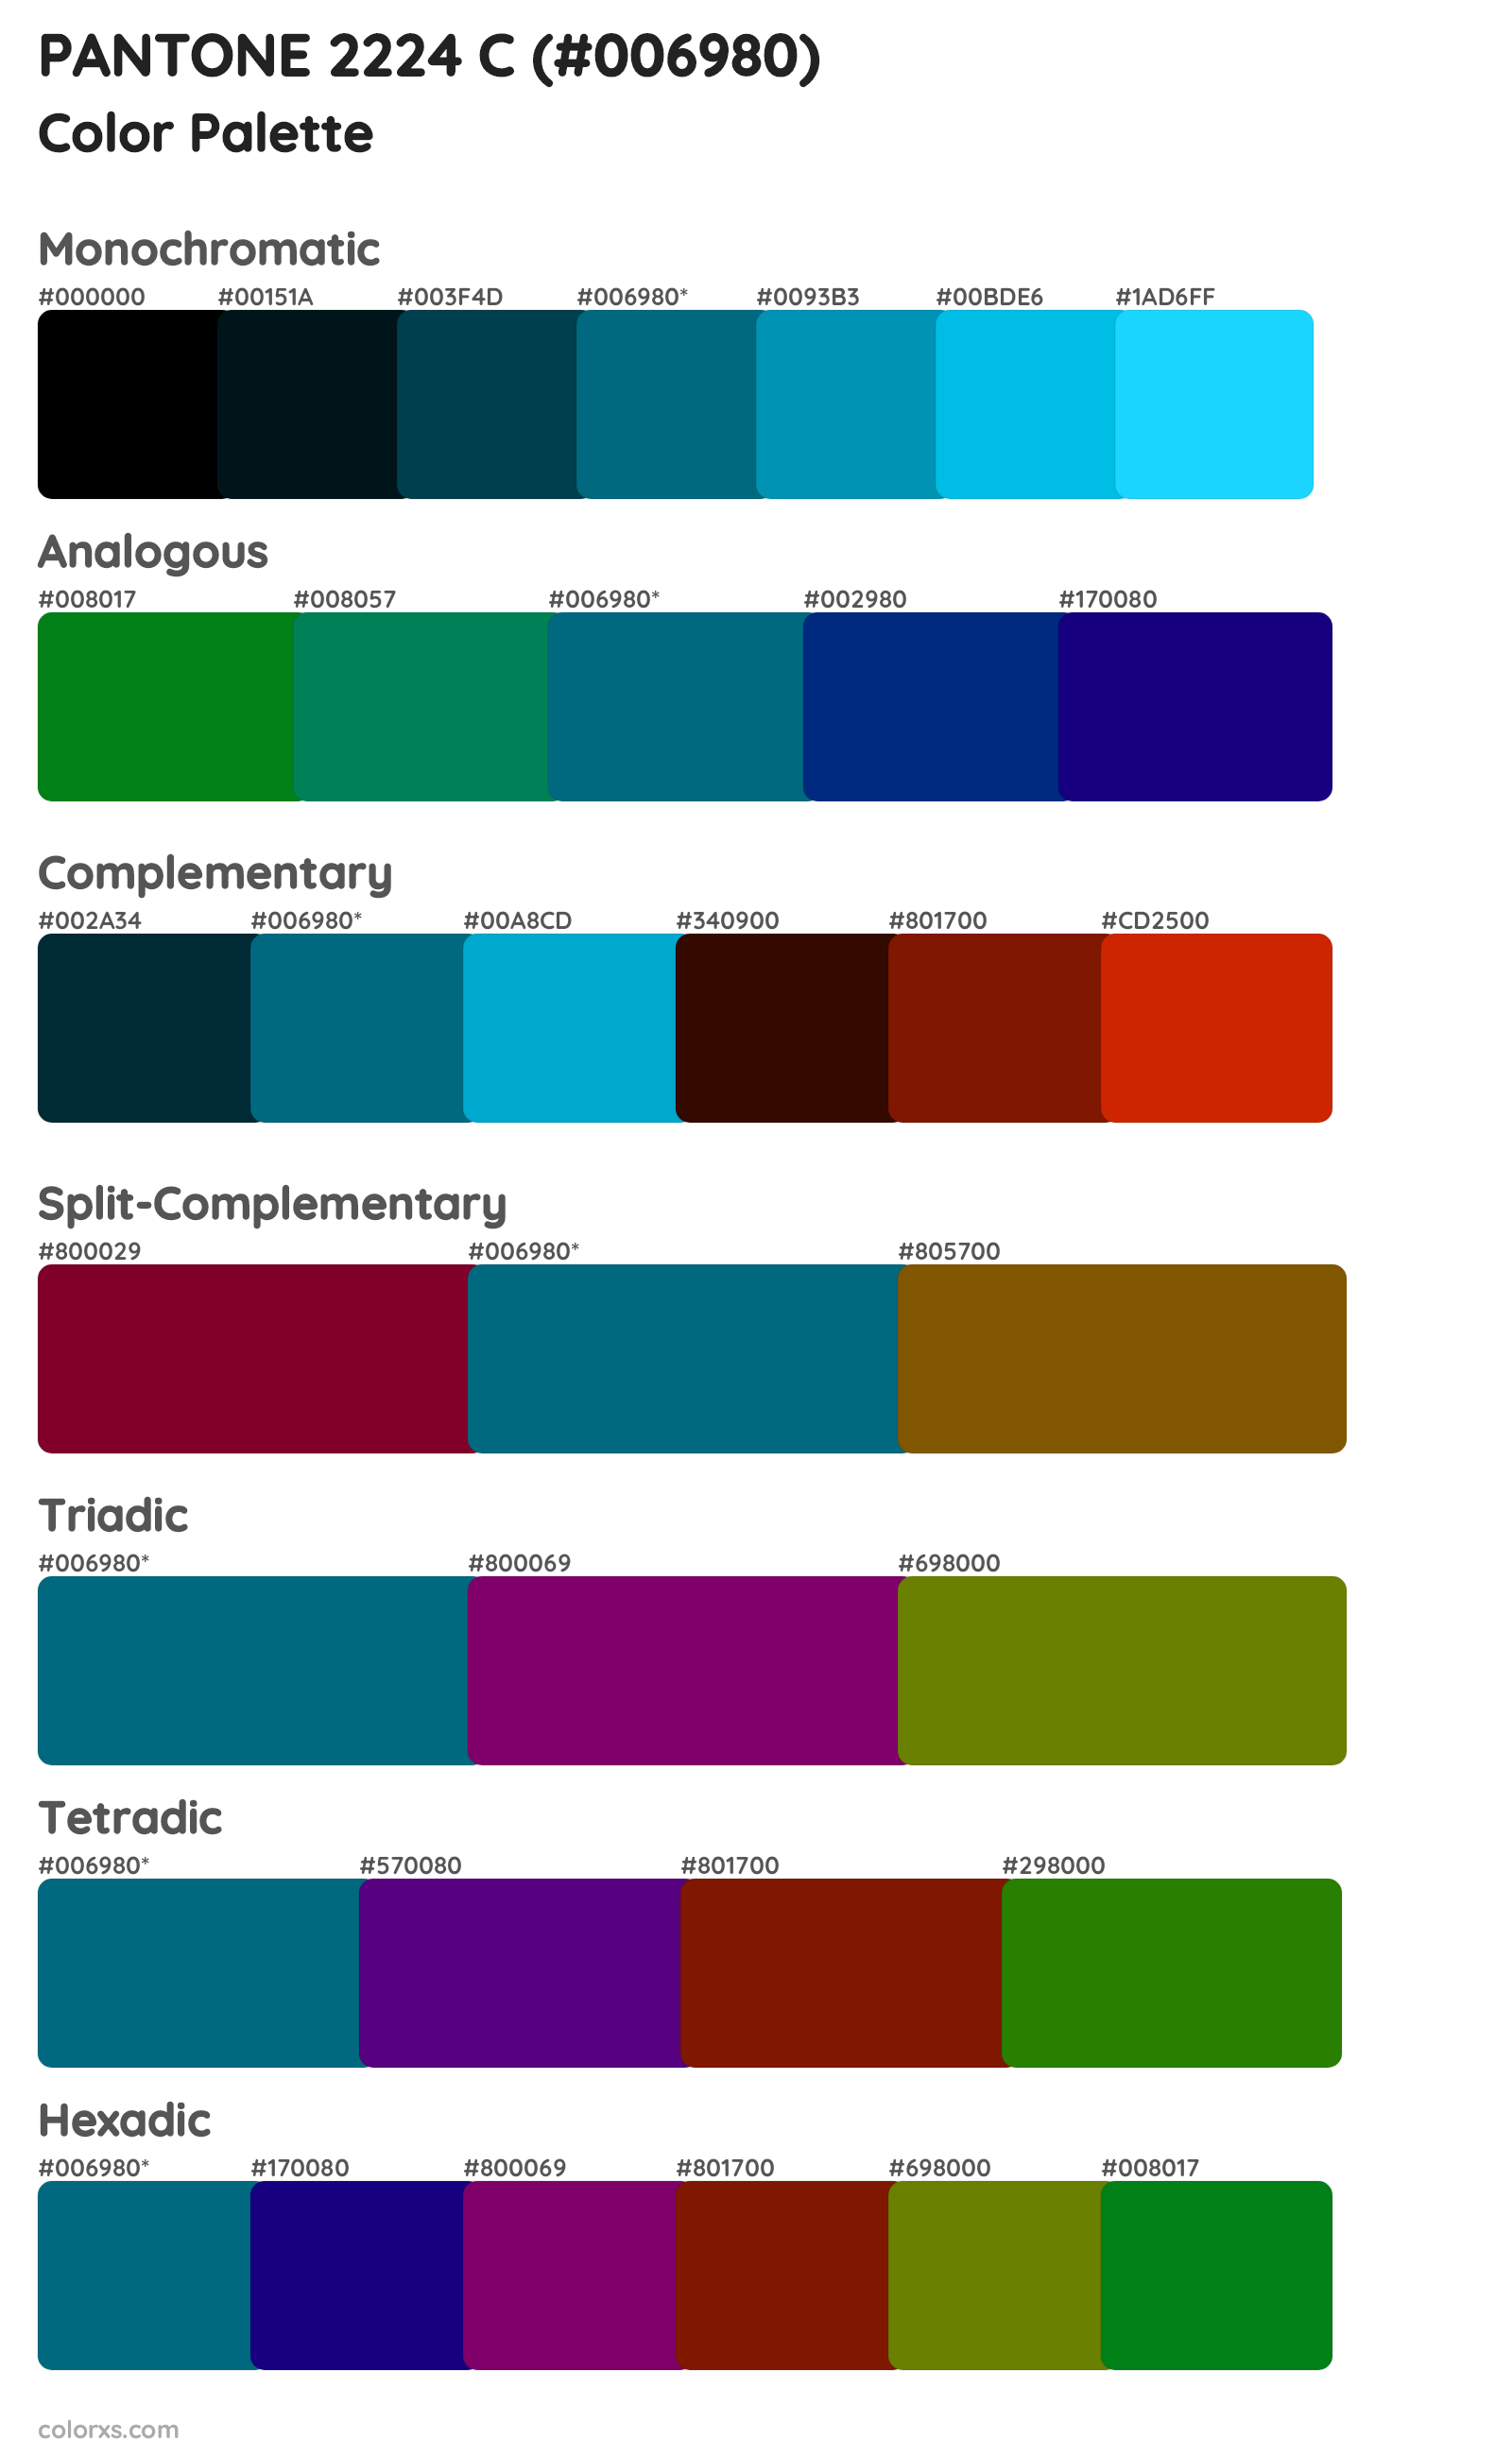 PANTONE 2224 C Color Scheme Palettes